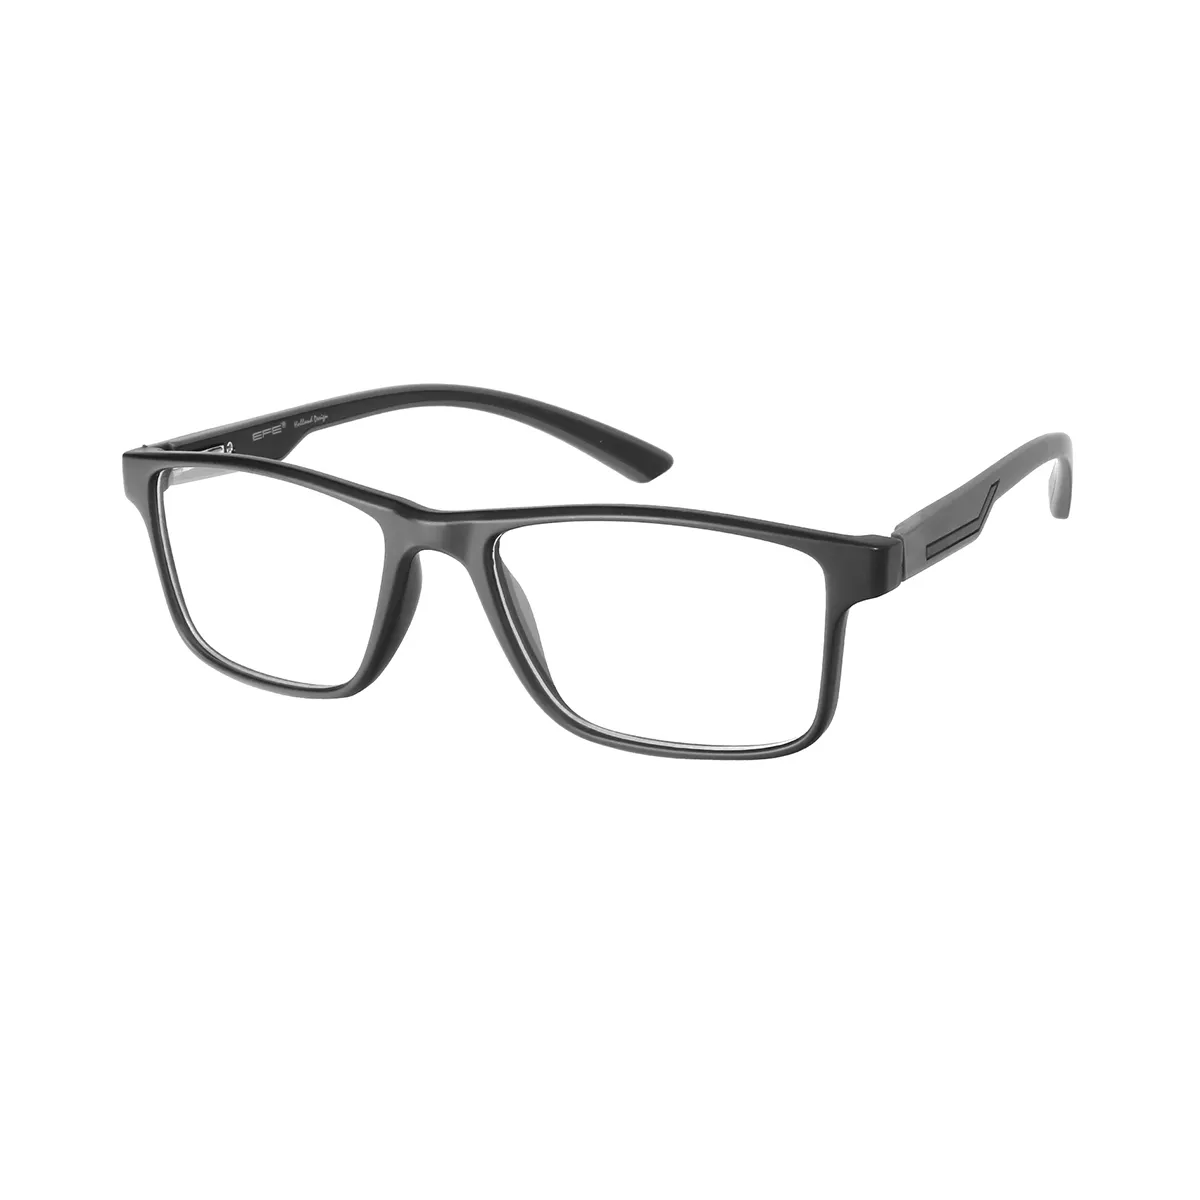 Kirby - Rectangle Black-Gray Glasses for Men